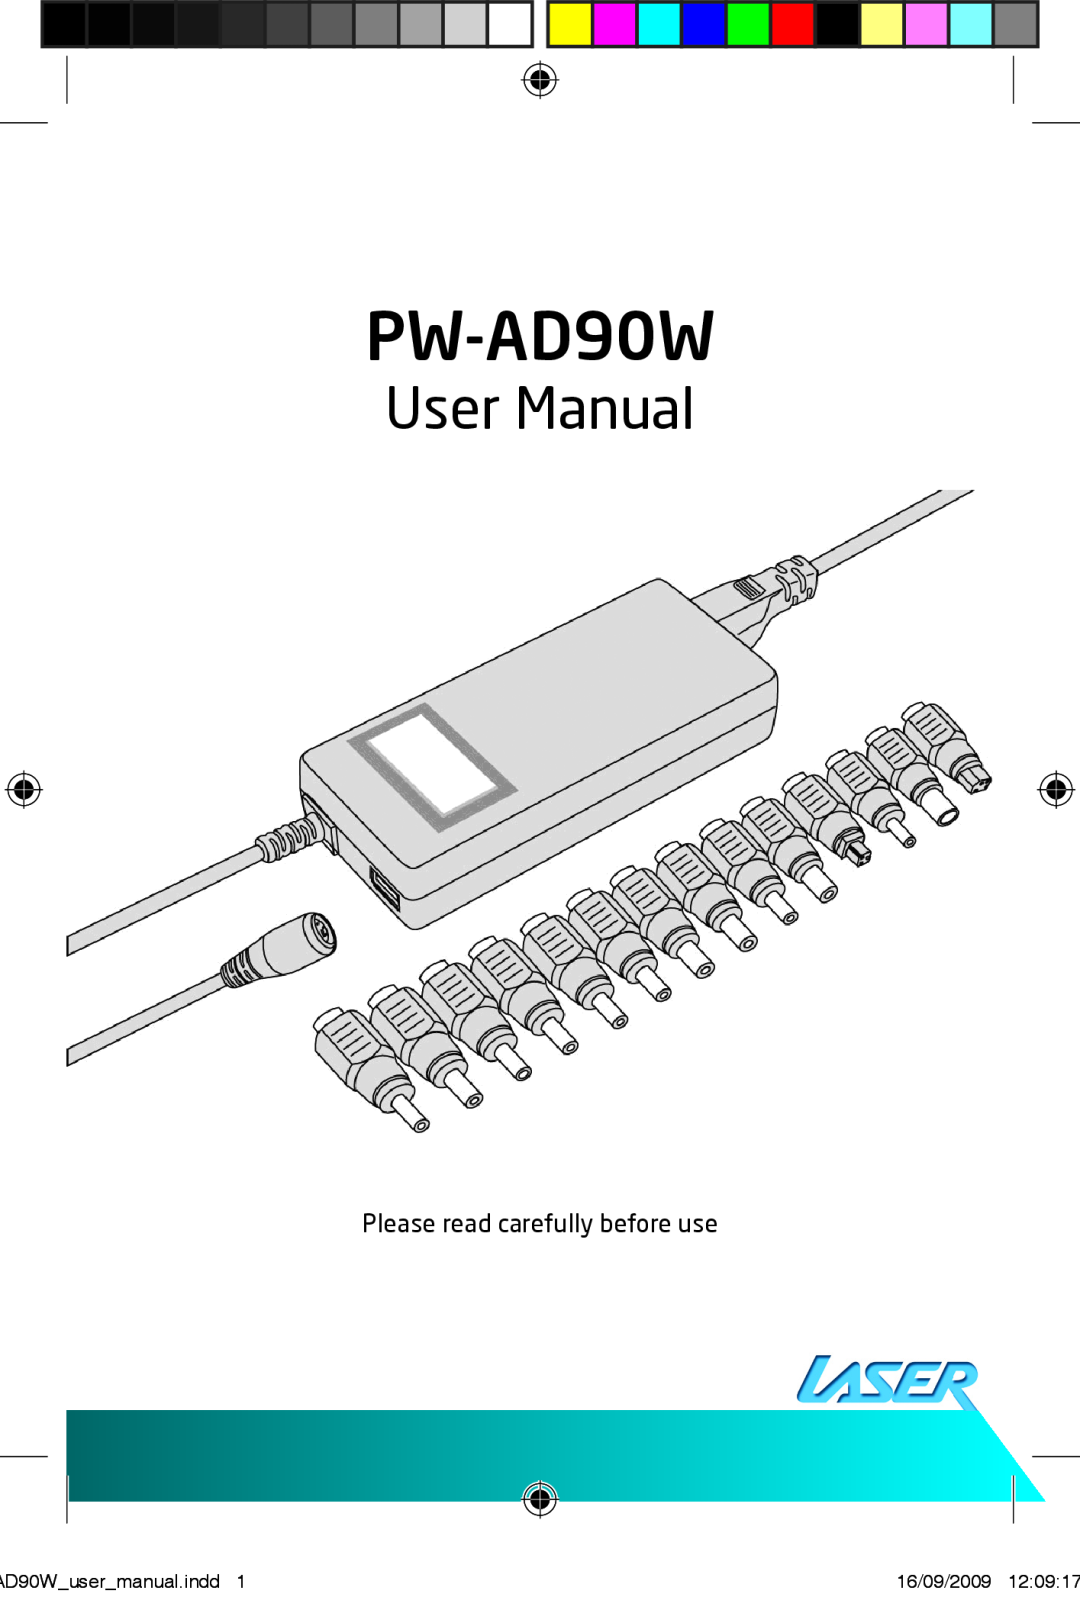 Laser PW-AD90W user manual User Manual, AD90Wusermanual.indd, 16/09/2009 